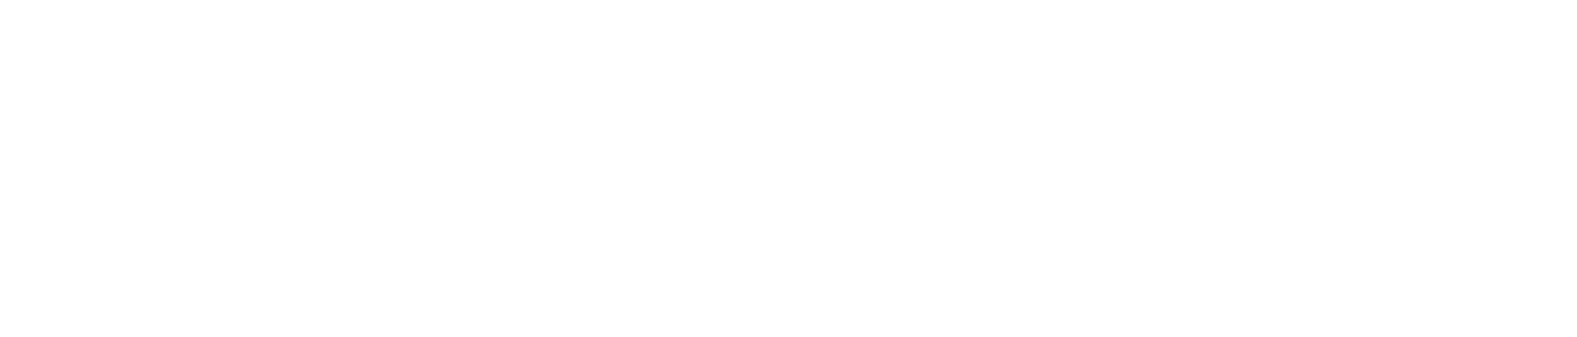 Fresenius Medical Care logo grand pour les fonds sombres (PNG transparent)